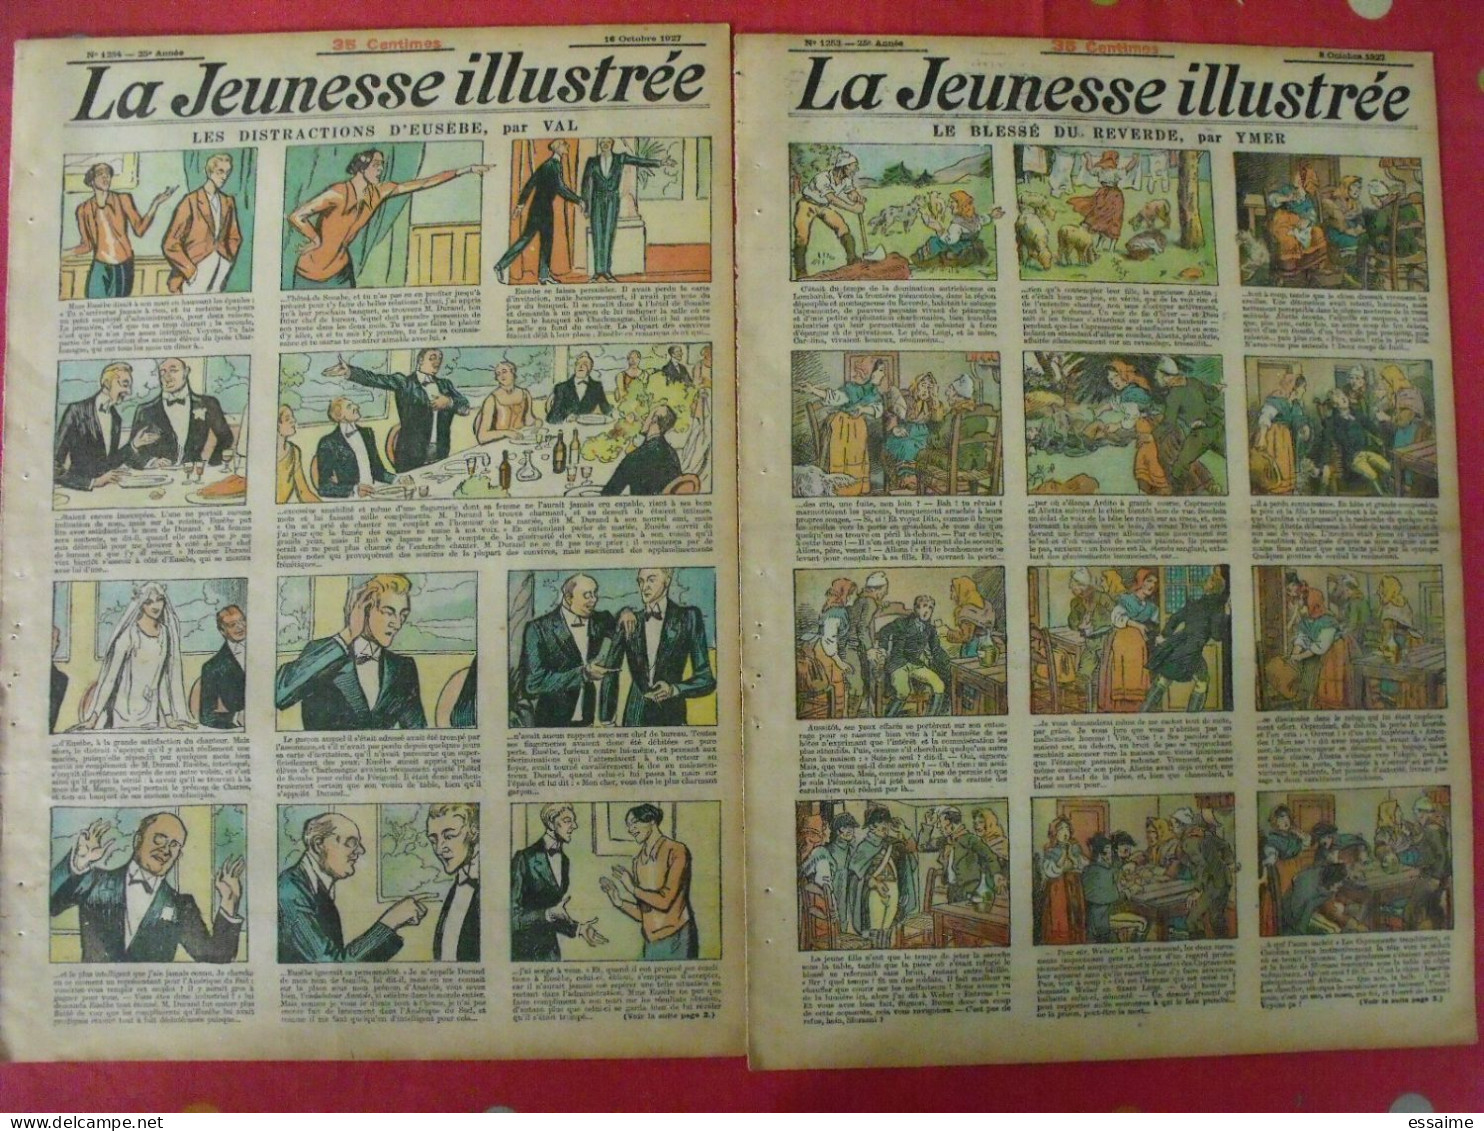 12 n° de La Jeunesse illustrée de 1928. à redécouvrir